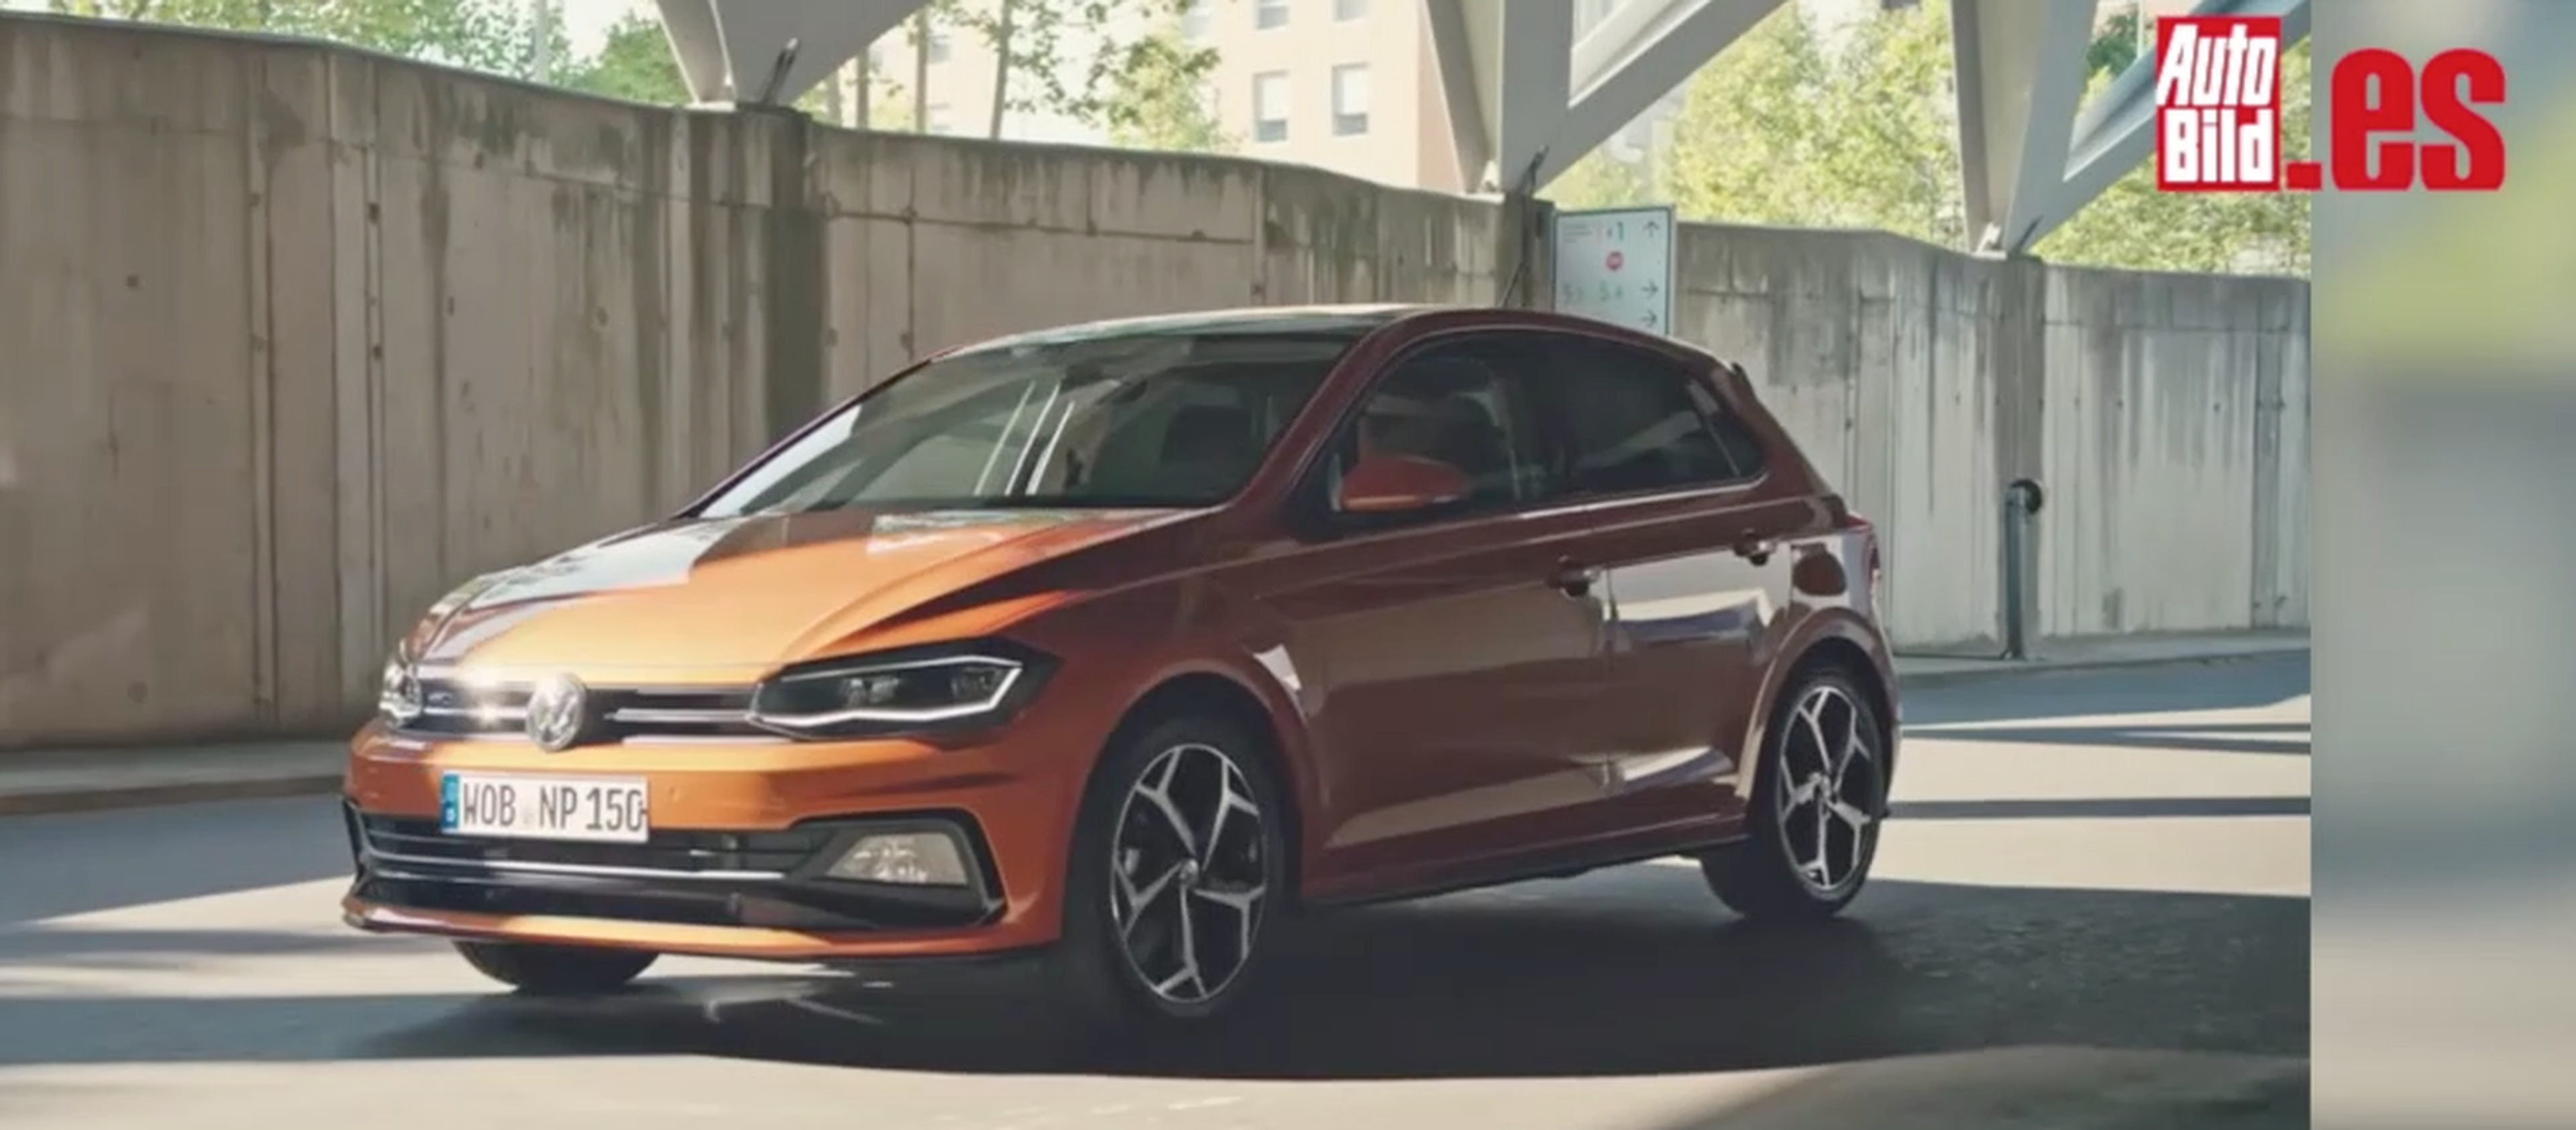 VÍDEO: ¡Lo tenemos! El nuevo Volkswagen Polo en movimiento